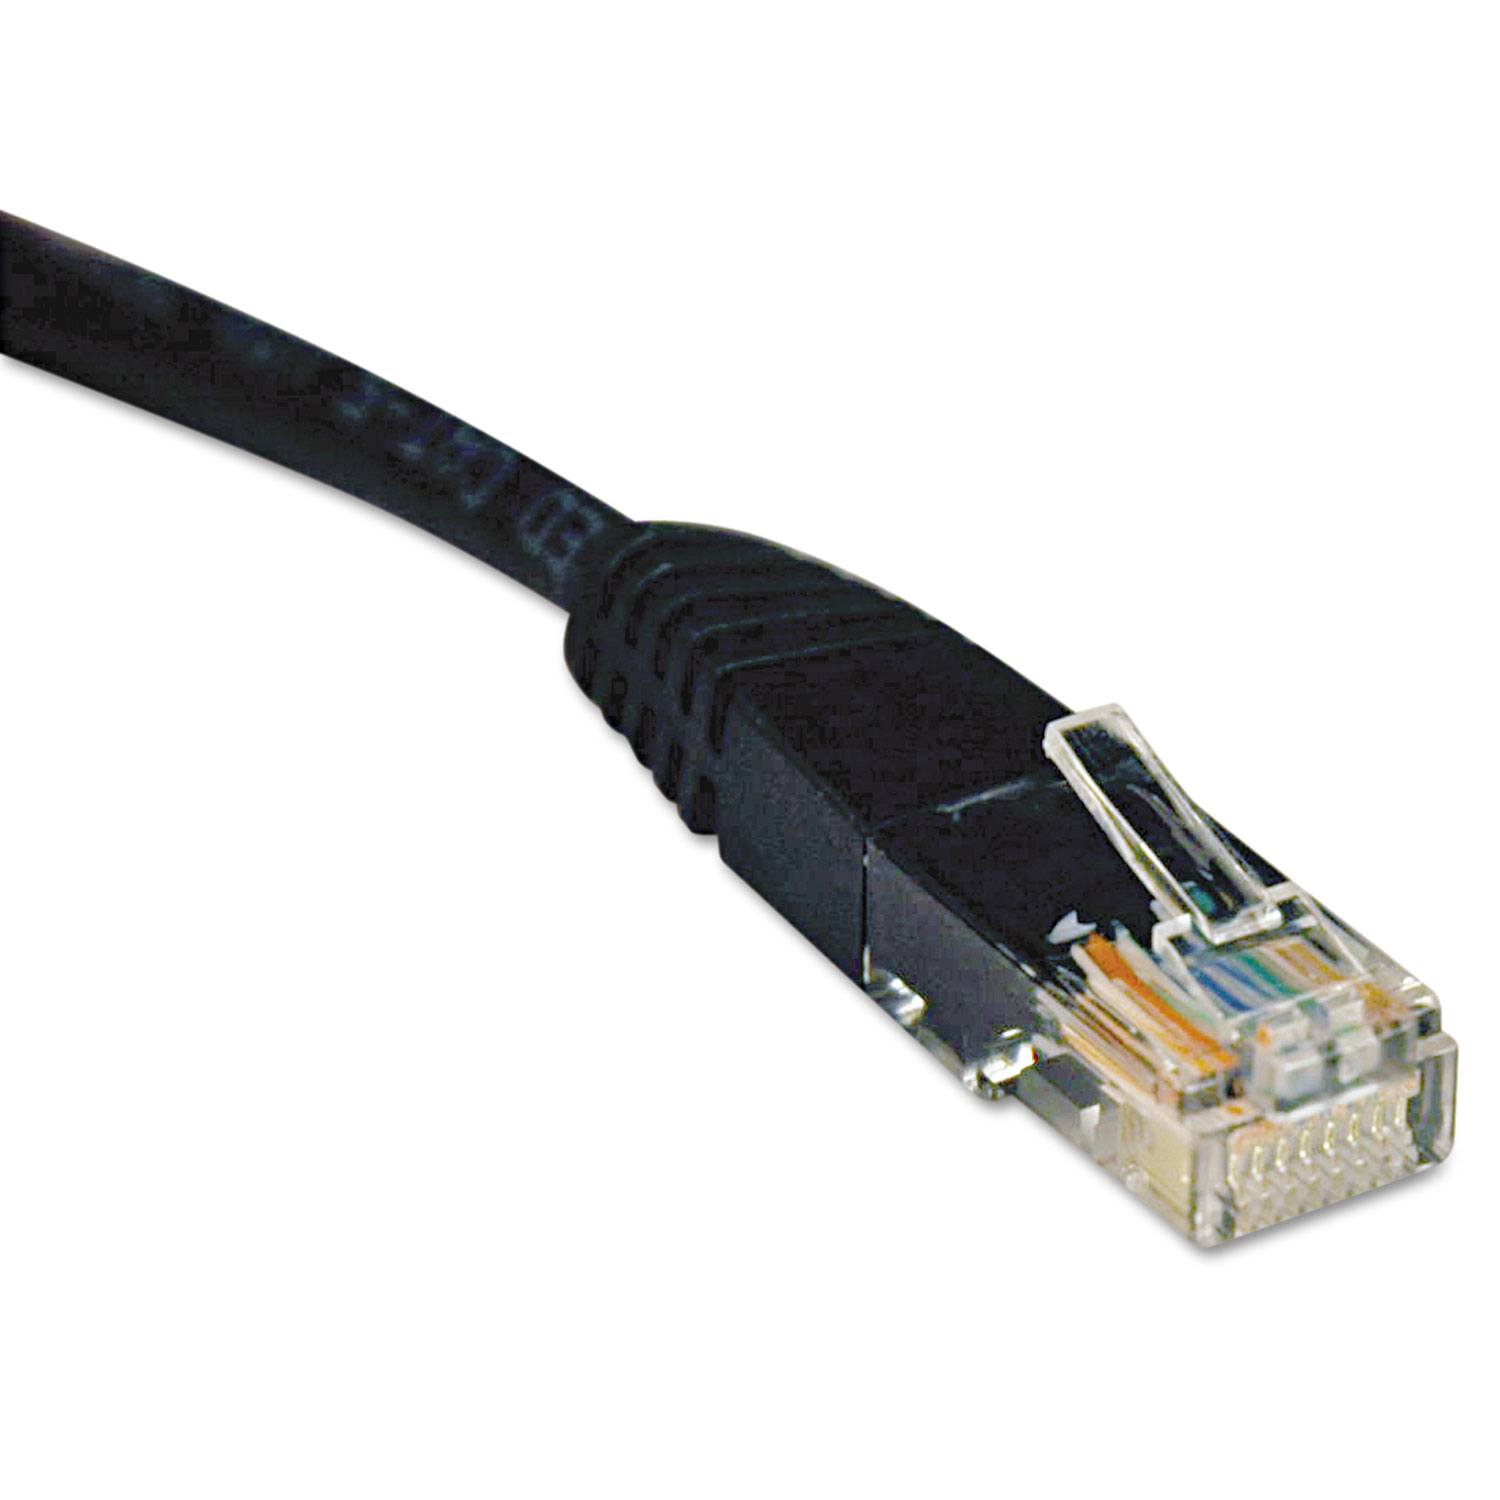  Tripp Lite N002-025-BK Cat5e 350MHz Molded Patch Cable, RJ45 (M/M), 25 ft., Black (TRPN002025BK) 